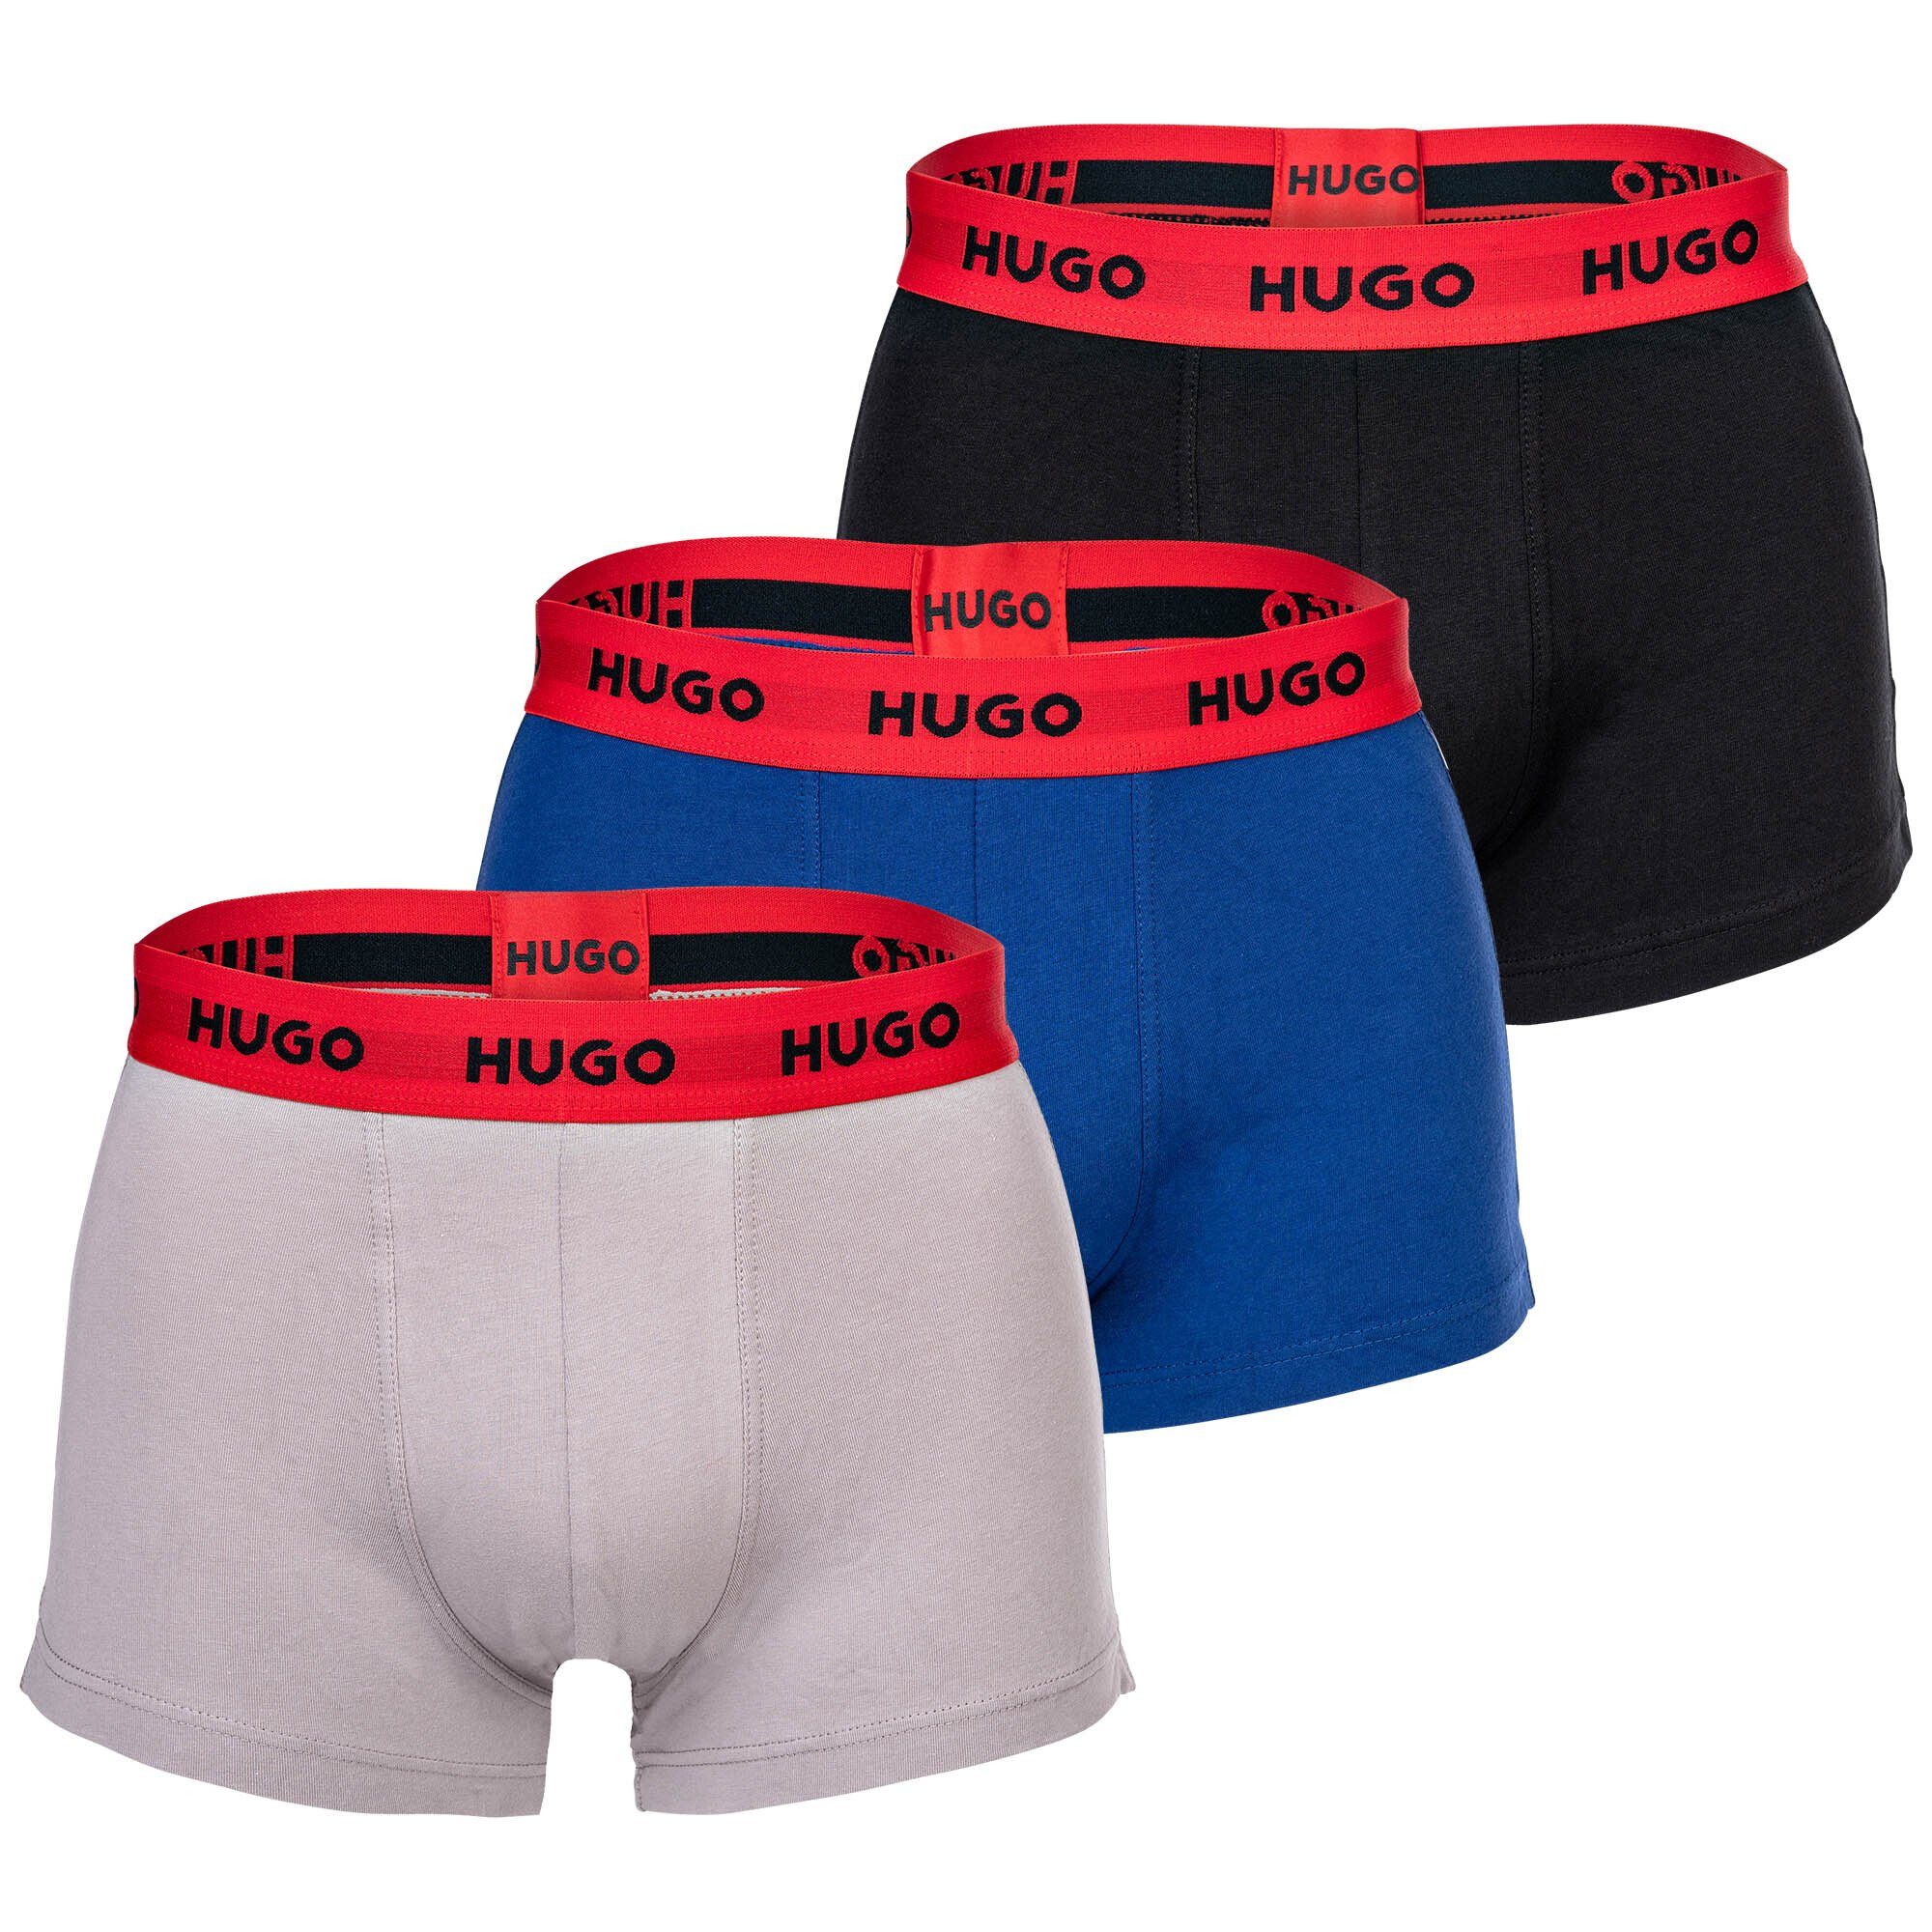 HUGO Boxer Herren Boxer Shorts, 3er Pack - Trunks Triplet Schwarz/Grau/Blau